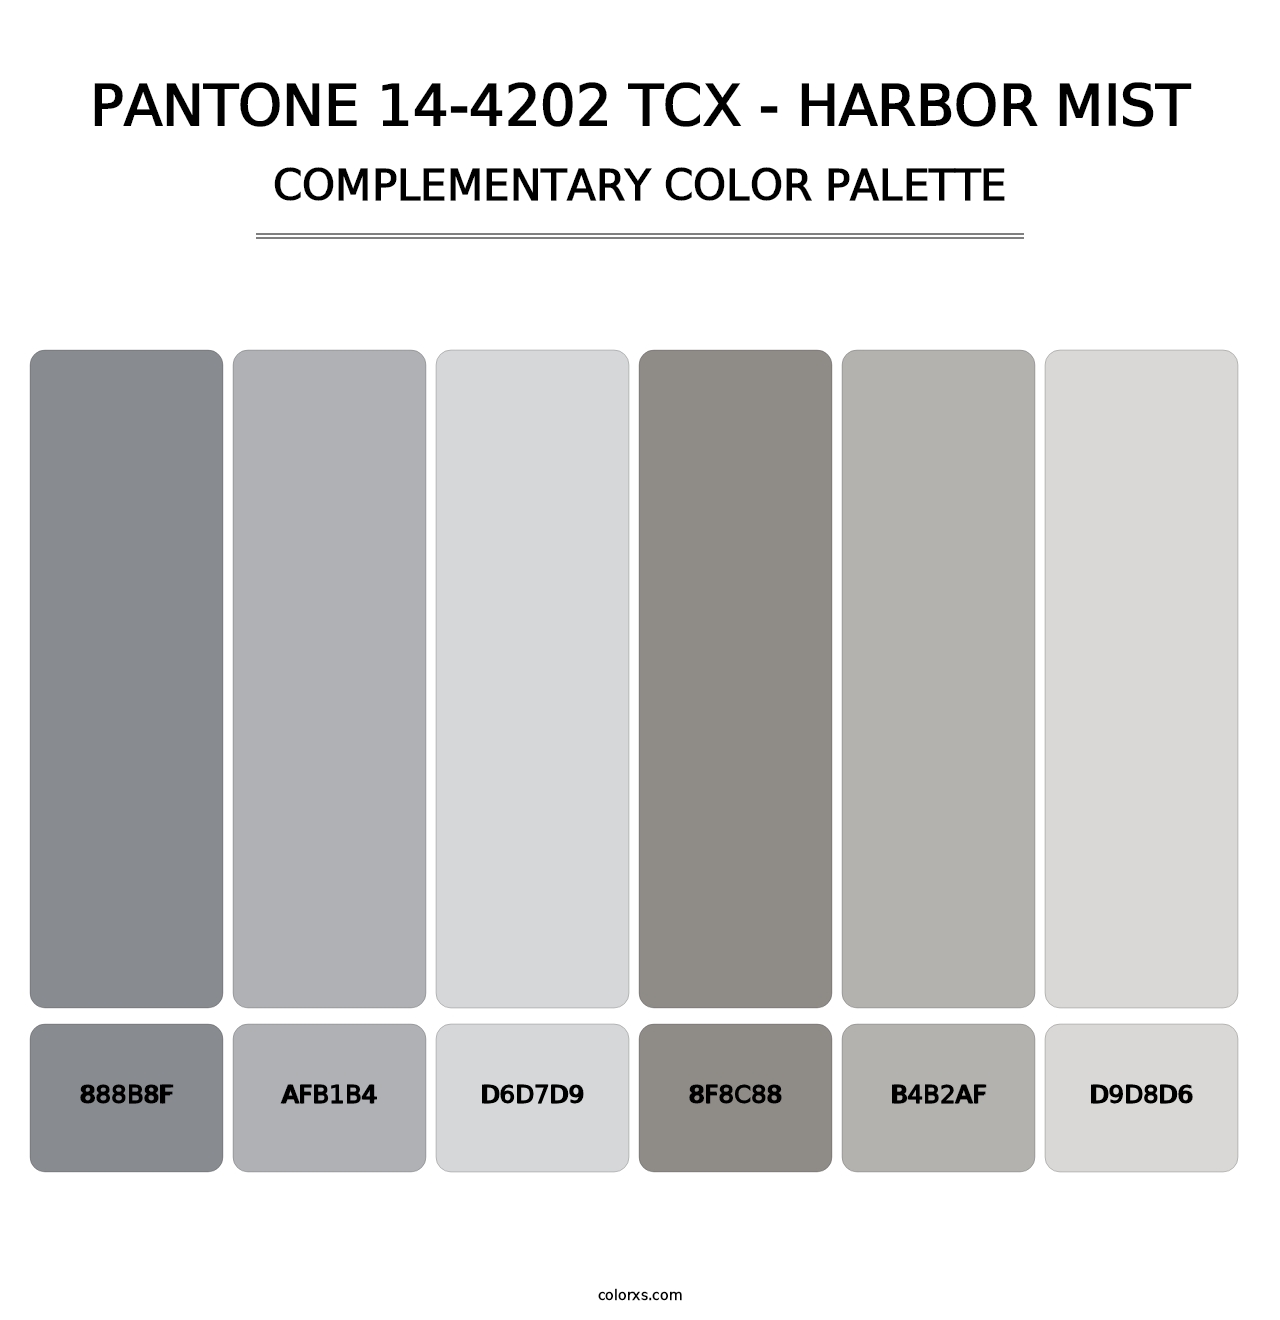 PANTONE 14-4202 TCX - Harbor Mist - Complementary Color Palette